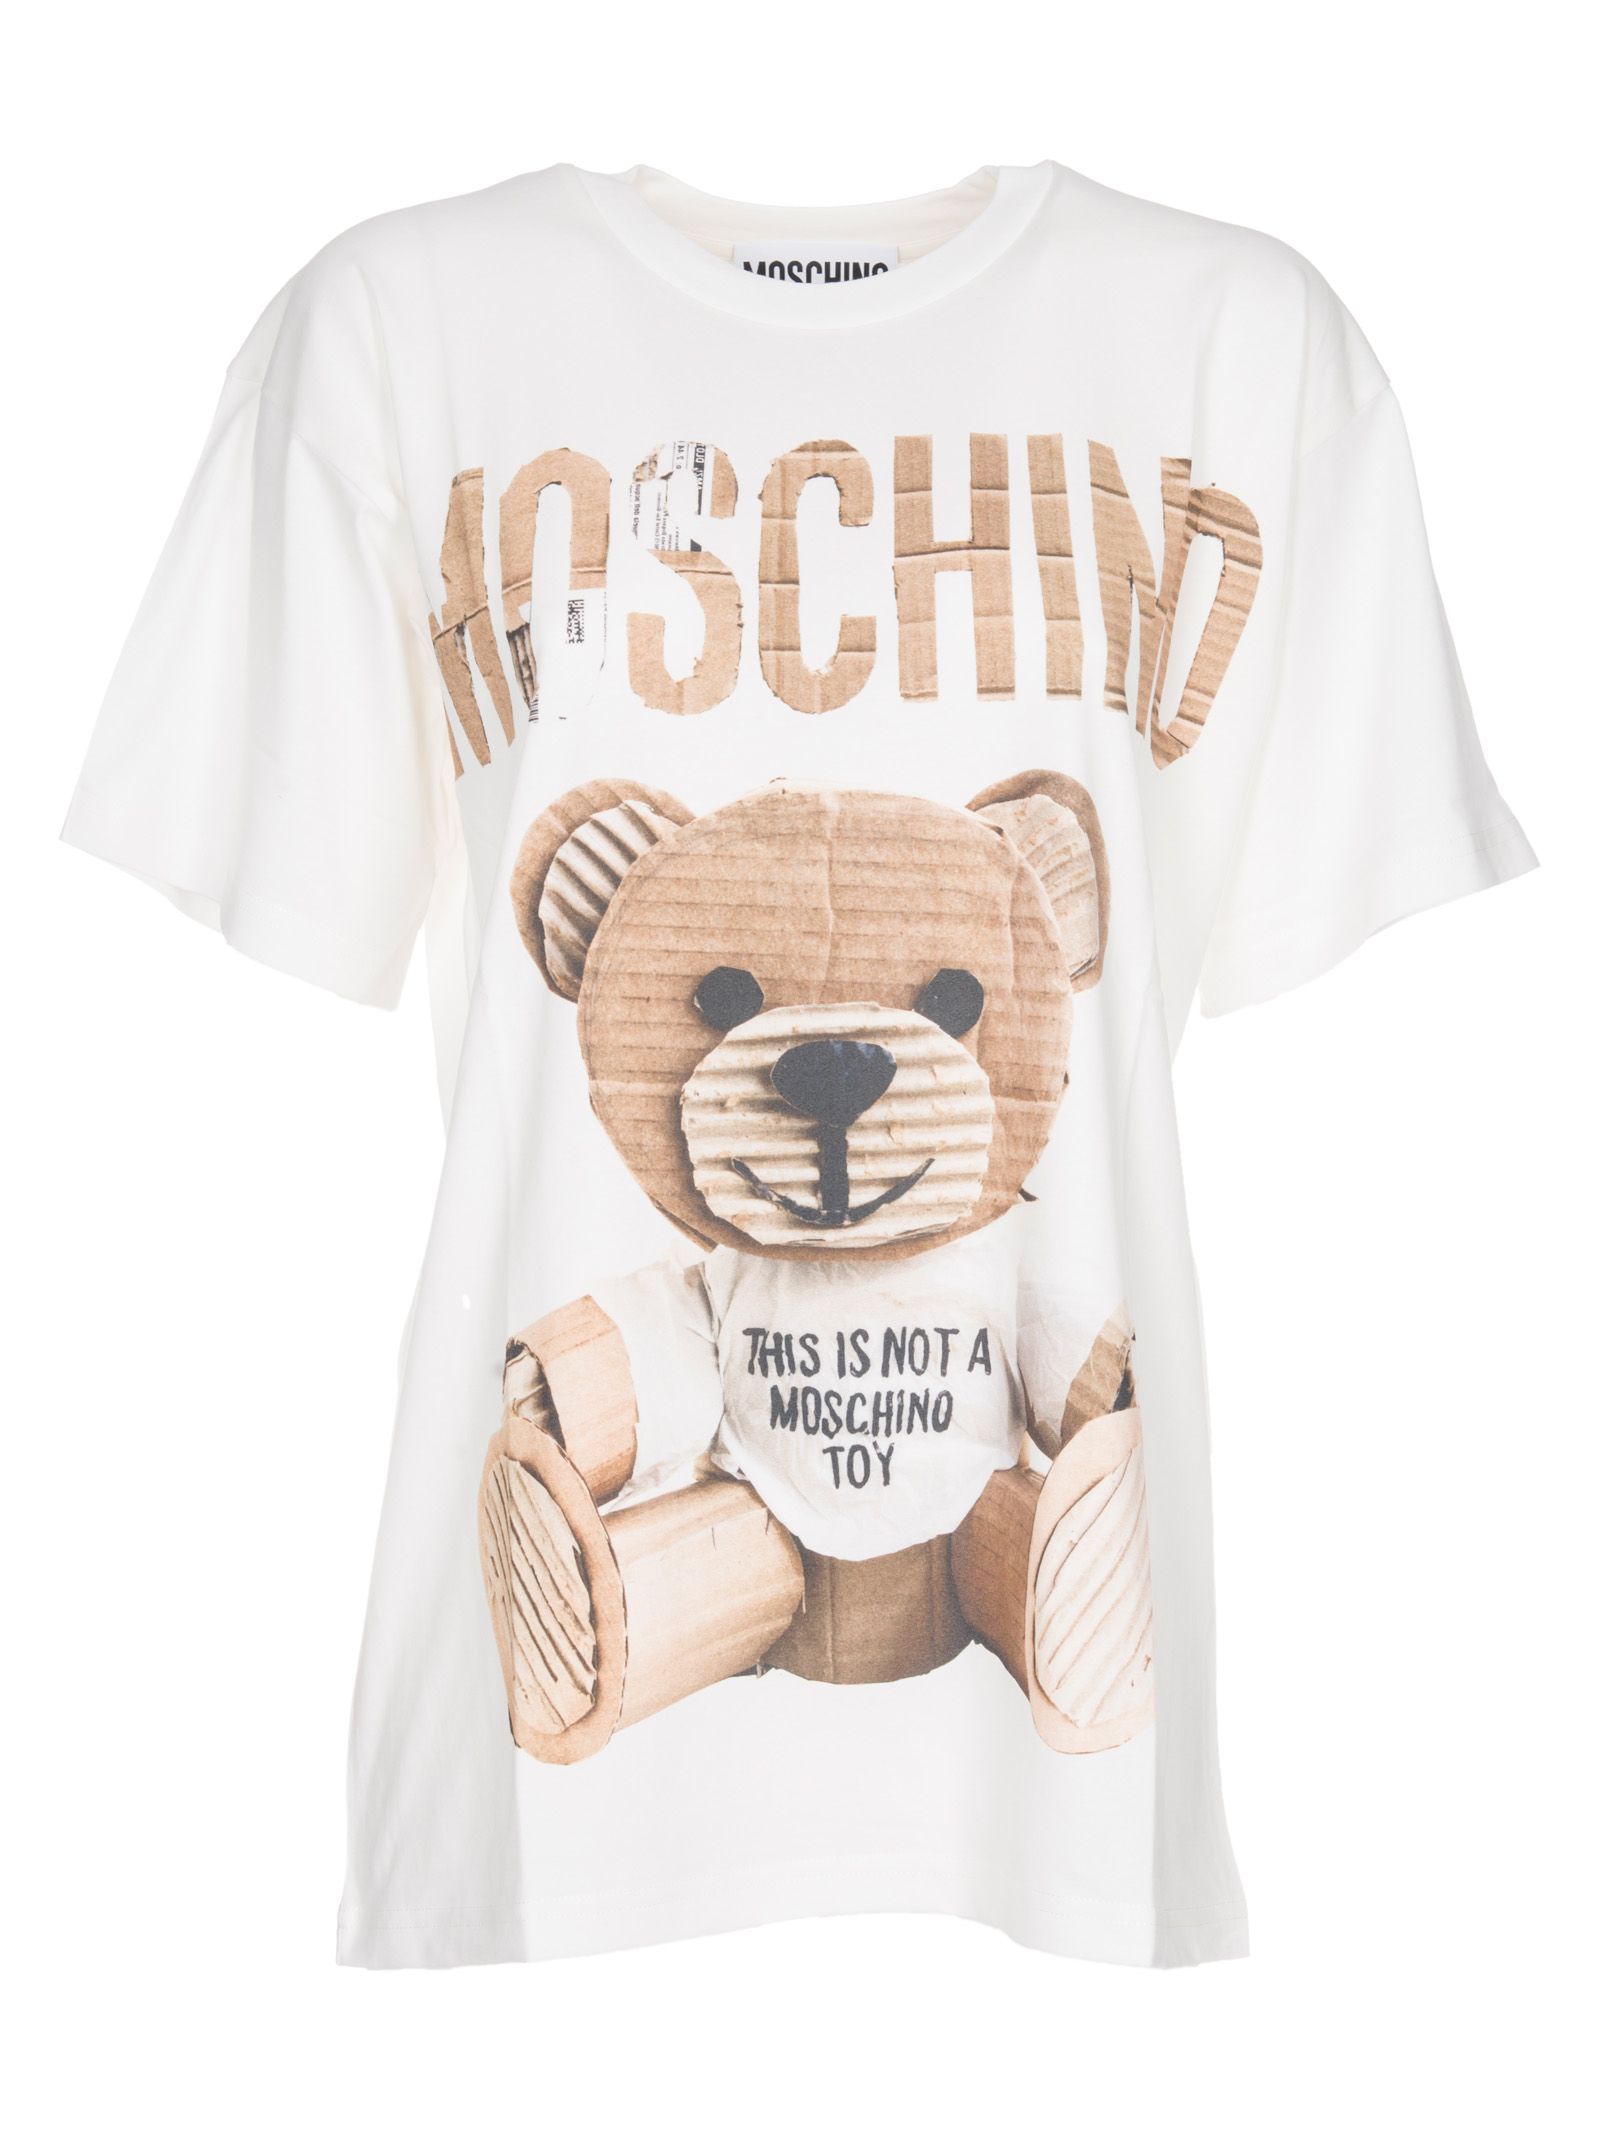 Where near moschino t shirt womens teddy bear xbox